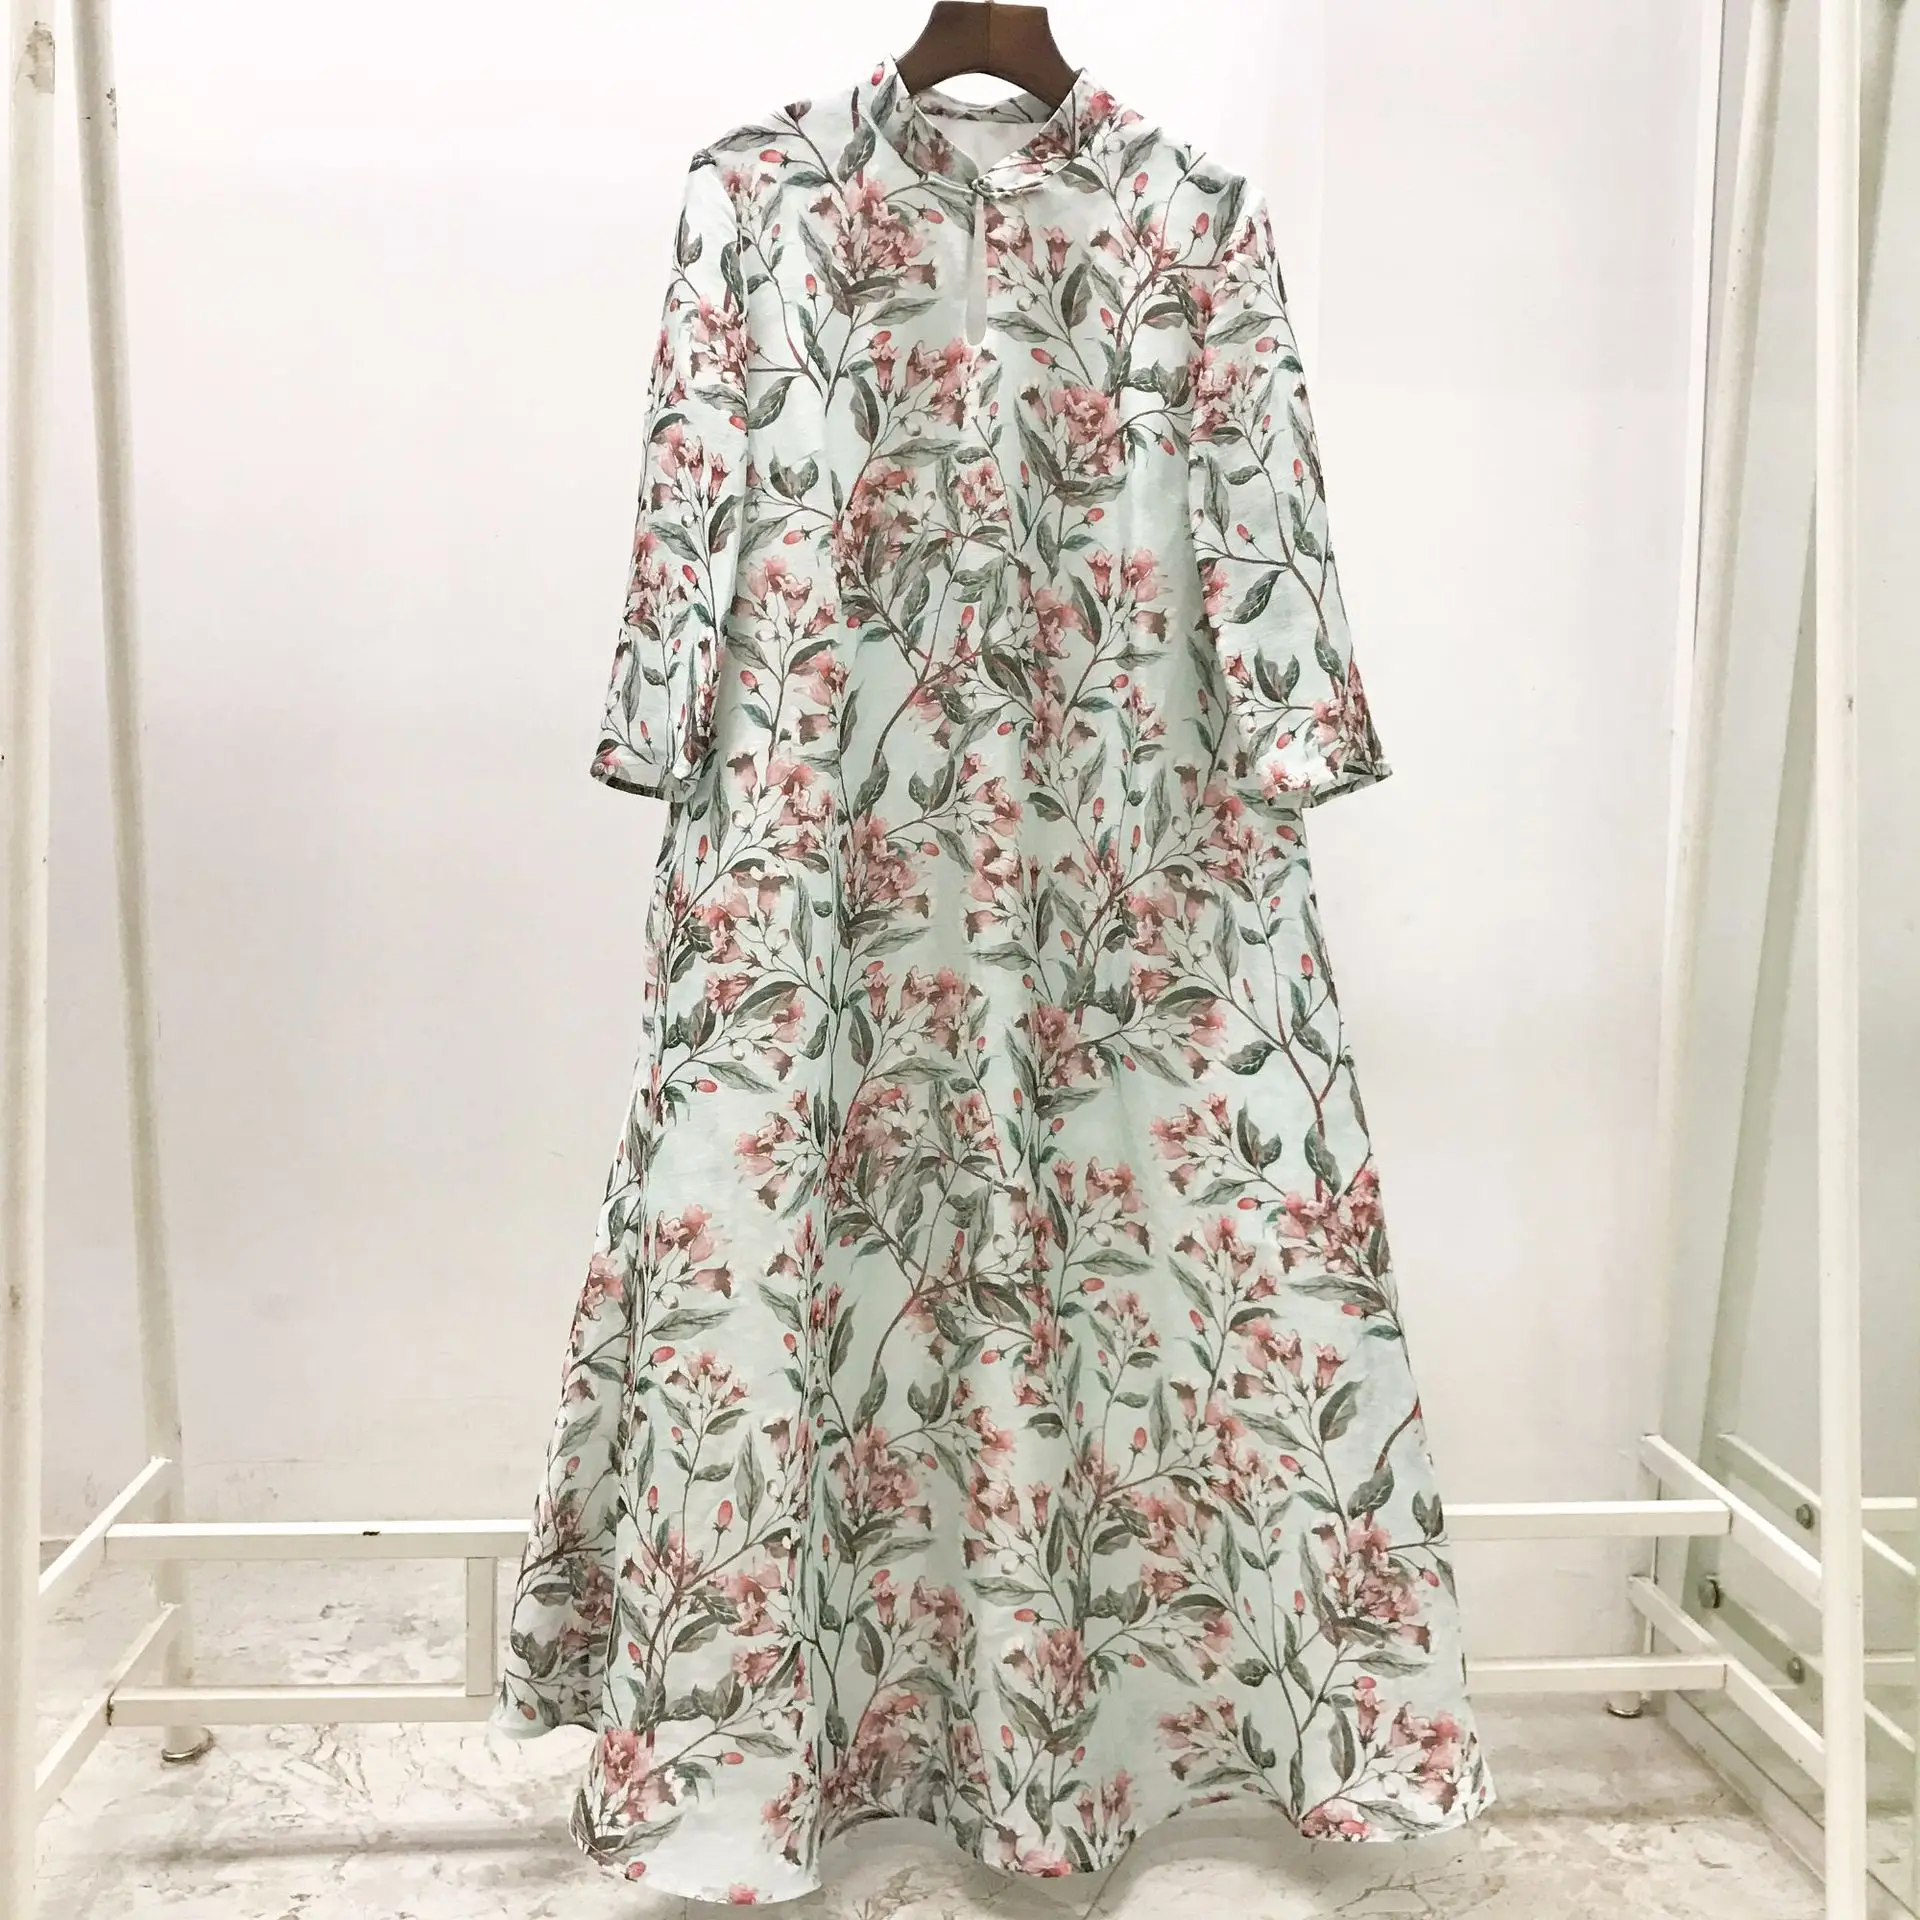 2019 весна/лето новые женские платье с цветочным принтом в китайском стиле 30% натурального шелка Большие размеры свободные длинные платья